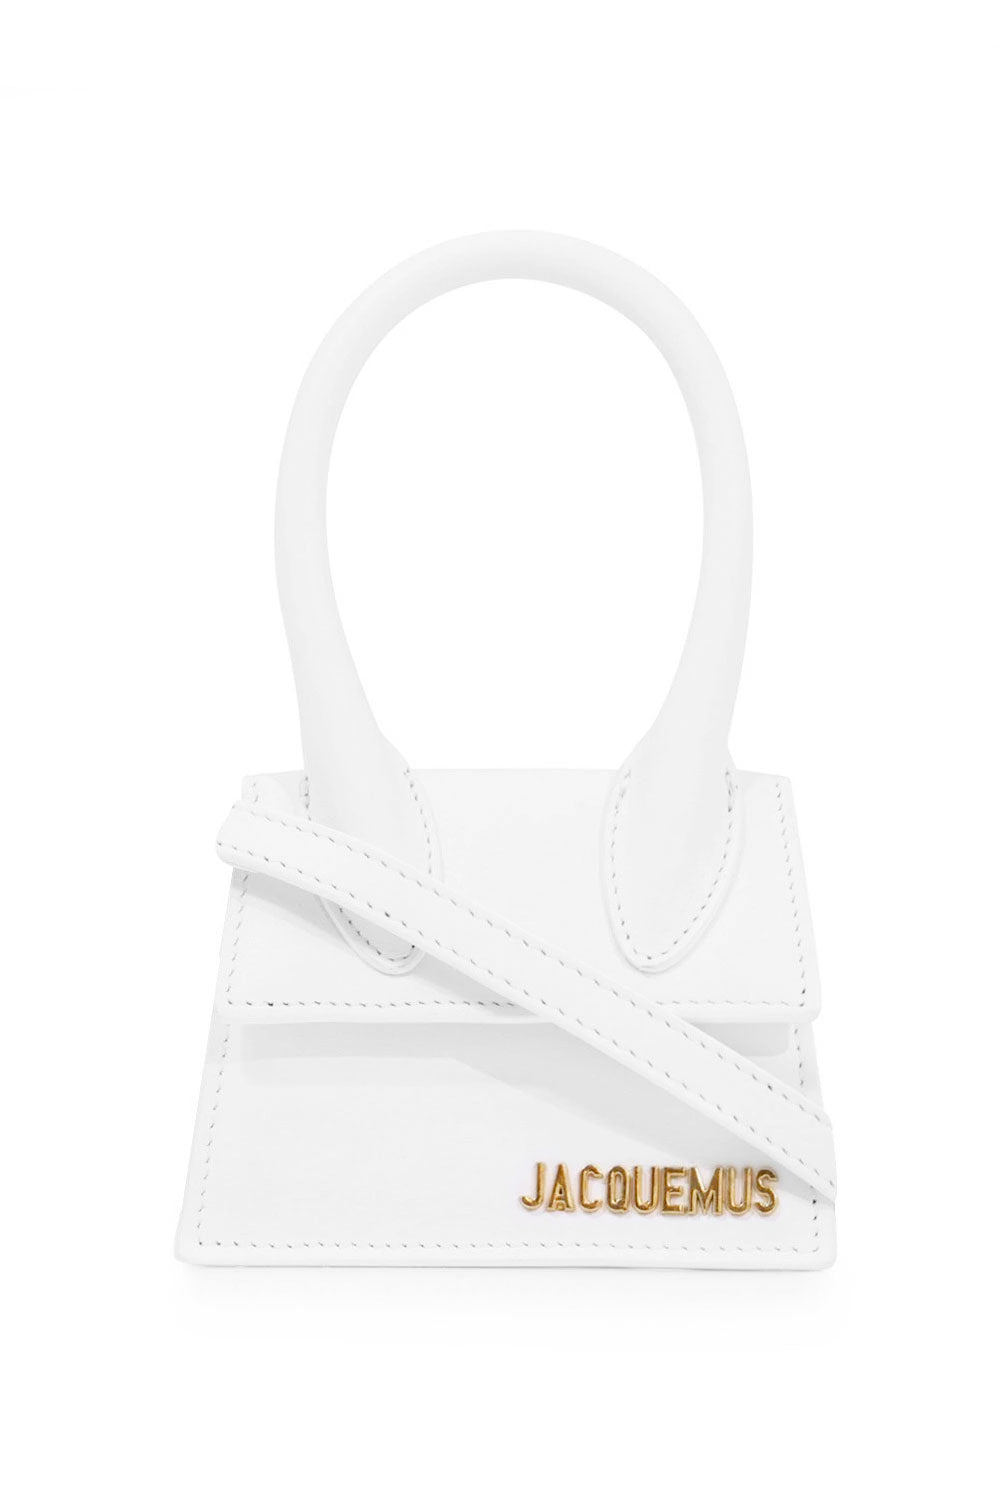 JACQUEMUS LE CHIQUITO BAG WHITE NEW SEASON PARLOUR X ONLINE SYDNEY ...